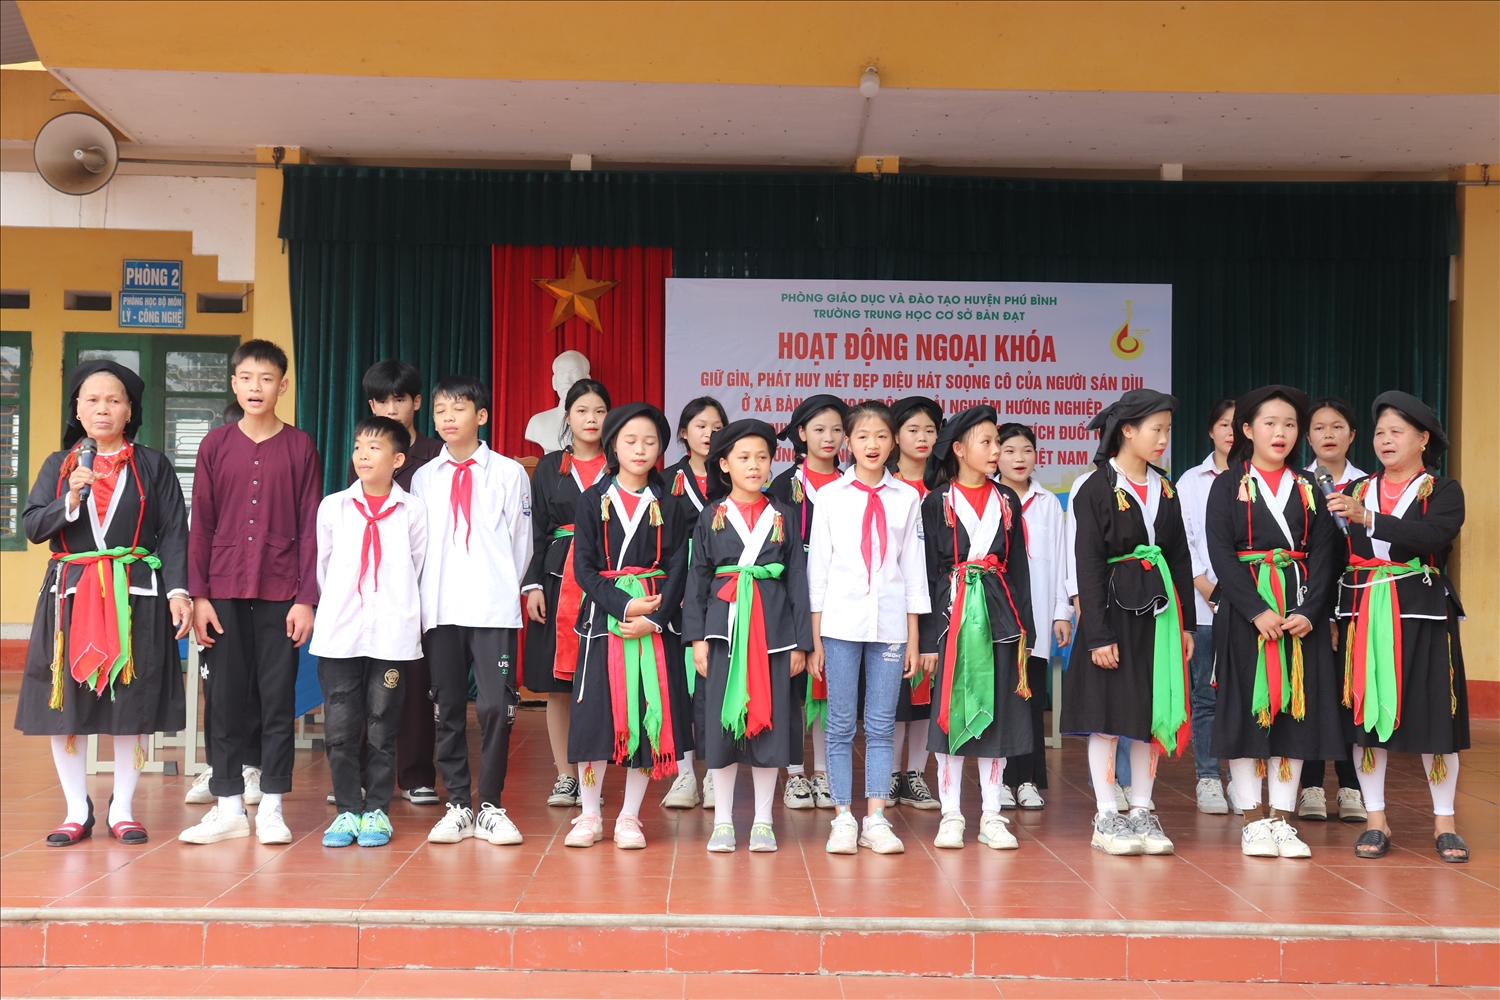 Một buổi hoạt động ngoại khóa của học sinh Trường Trường THCS Bàn Đạt, huyện Phú Bình 